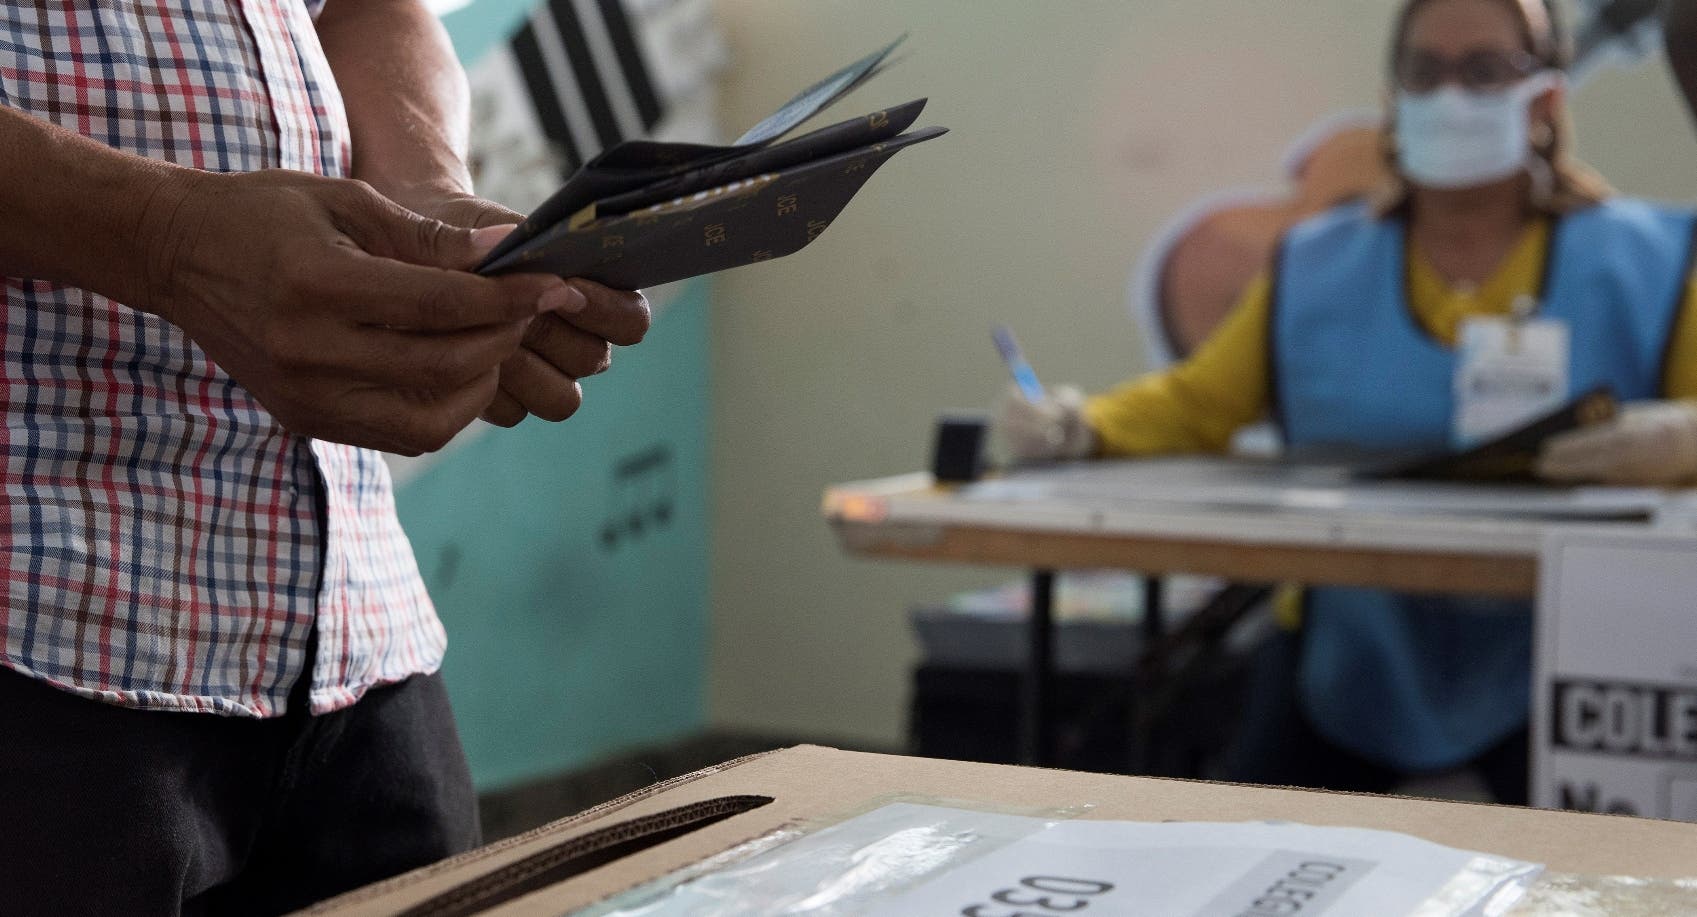 Ministerio de Salud de Panamá dice que no es viable realizar elecciones en su territorio